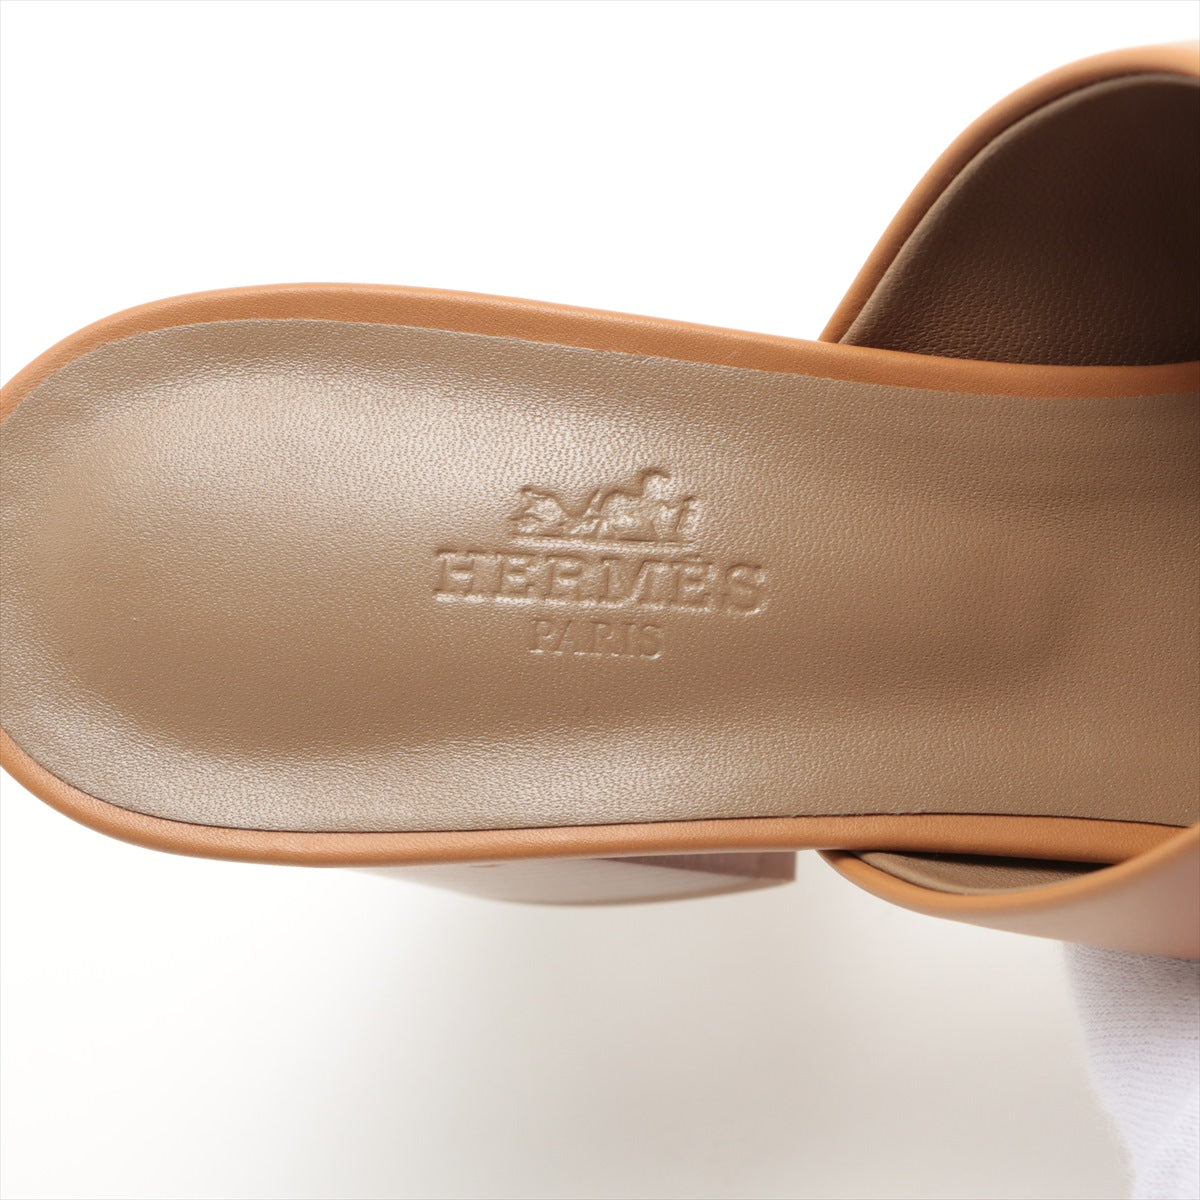 ケース販売 美品エルメスクレアサンダルサイズ25cmブラウン - 靴